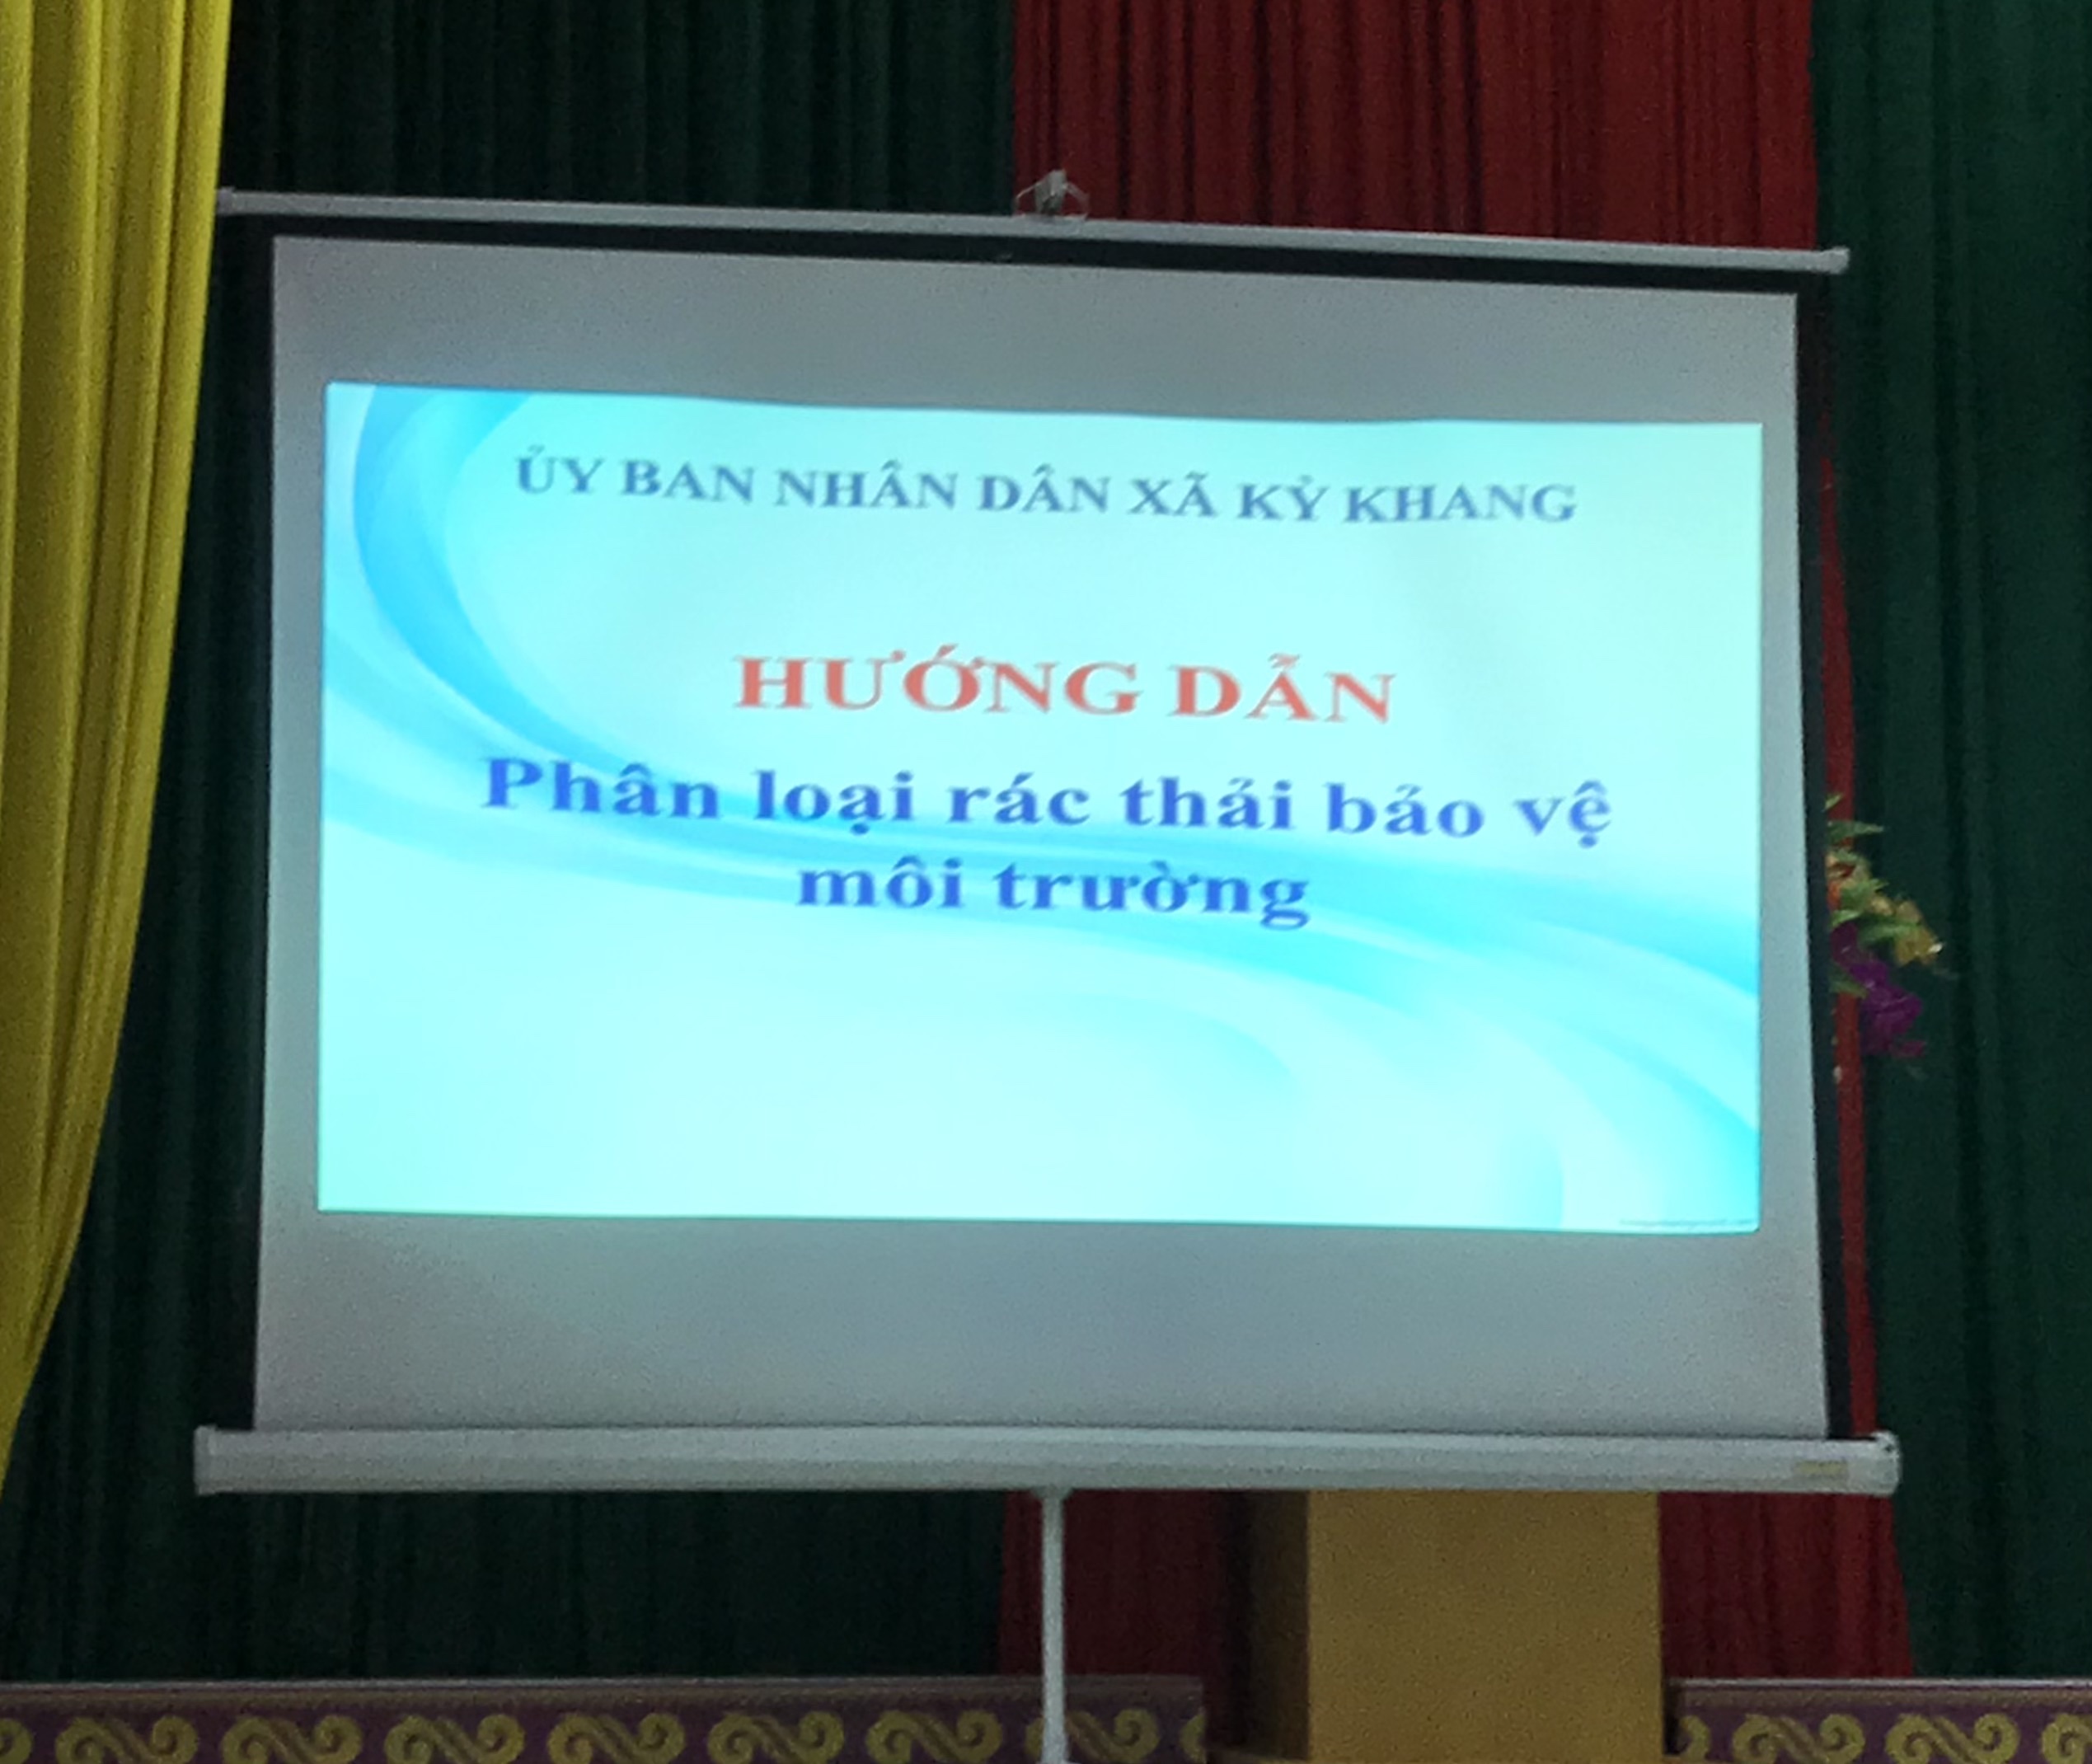 UBND xã Kỳ Khang tổ chức hội nghị triển khai kế hoạch tuyên truyền thu gom, phân loại và xử lý rác thải theo cách làm mới trên địa bà xã Kỳ Khang